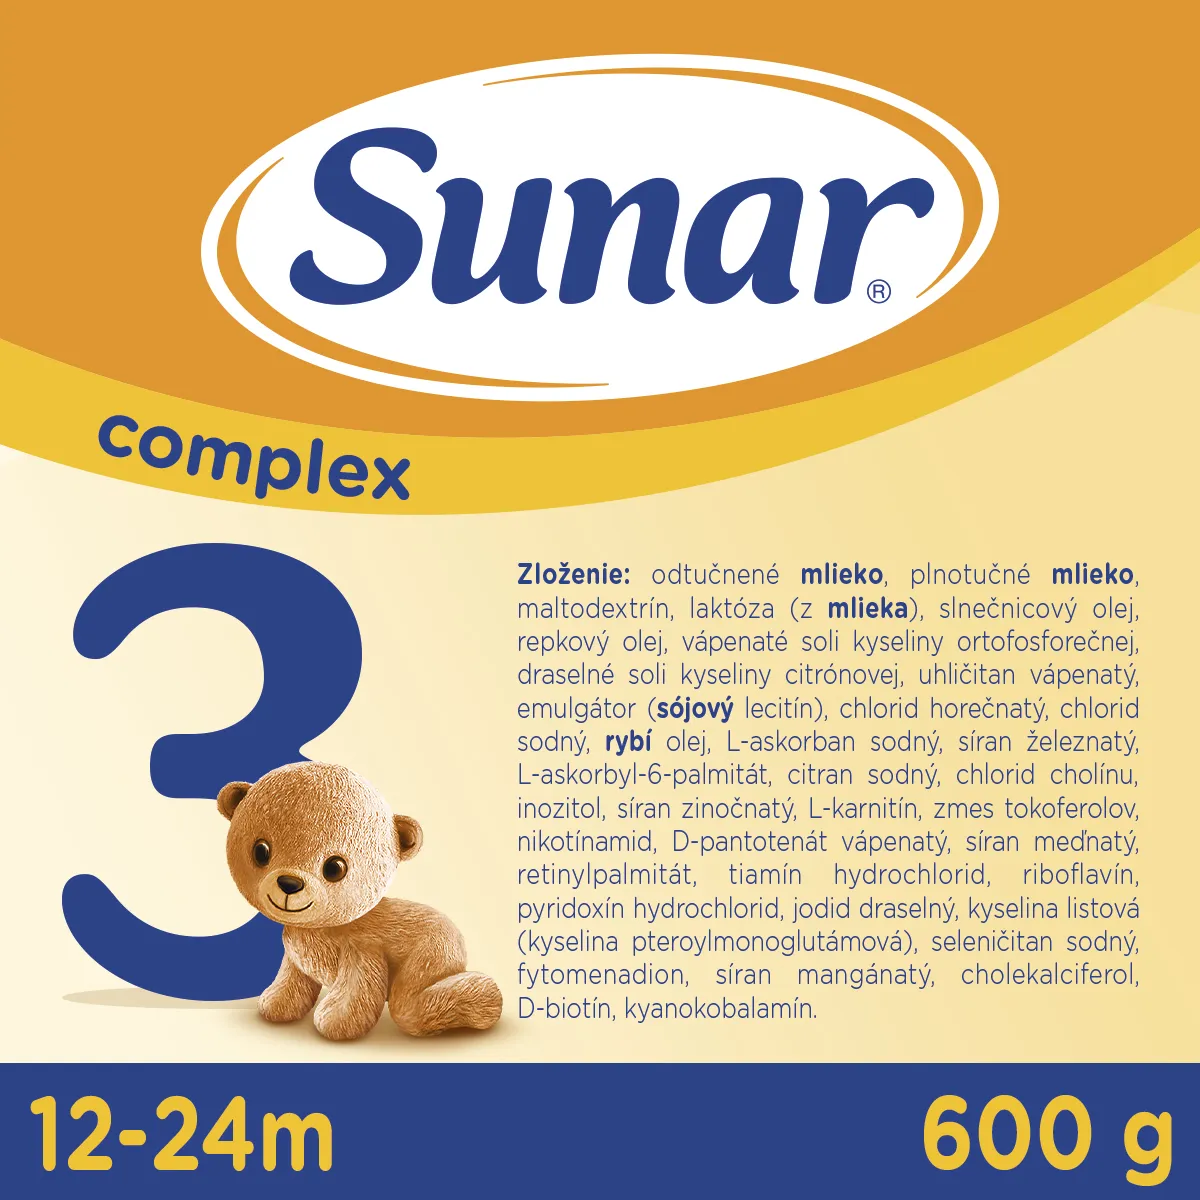 Sunar Complex 3 1×600 g, mliečna výživa, od 12. mesiaca